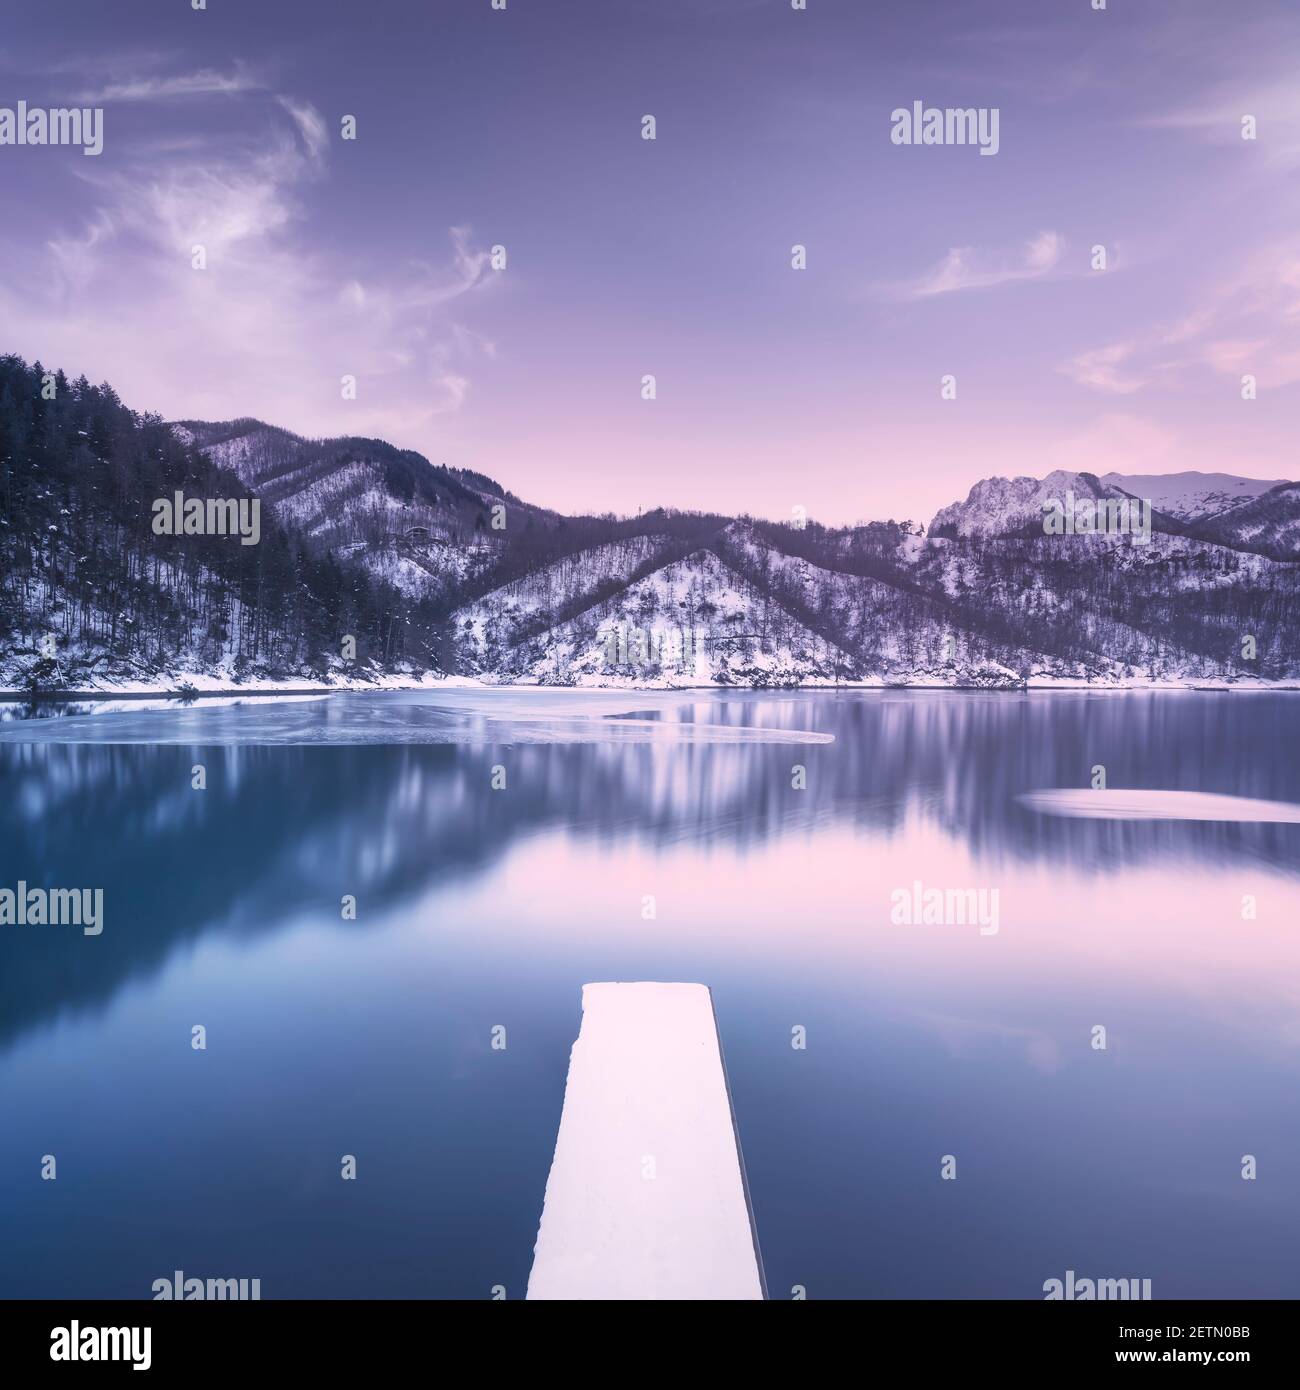 Lago ghiacciato e molo innevato nelle montagne Apuane in inverno. Garfagnana, Toscana, Italia, Europa. Fotografia a lunga esposizione. Foto Stock